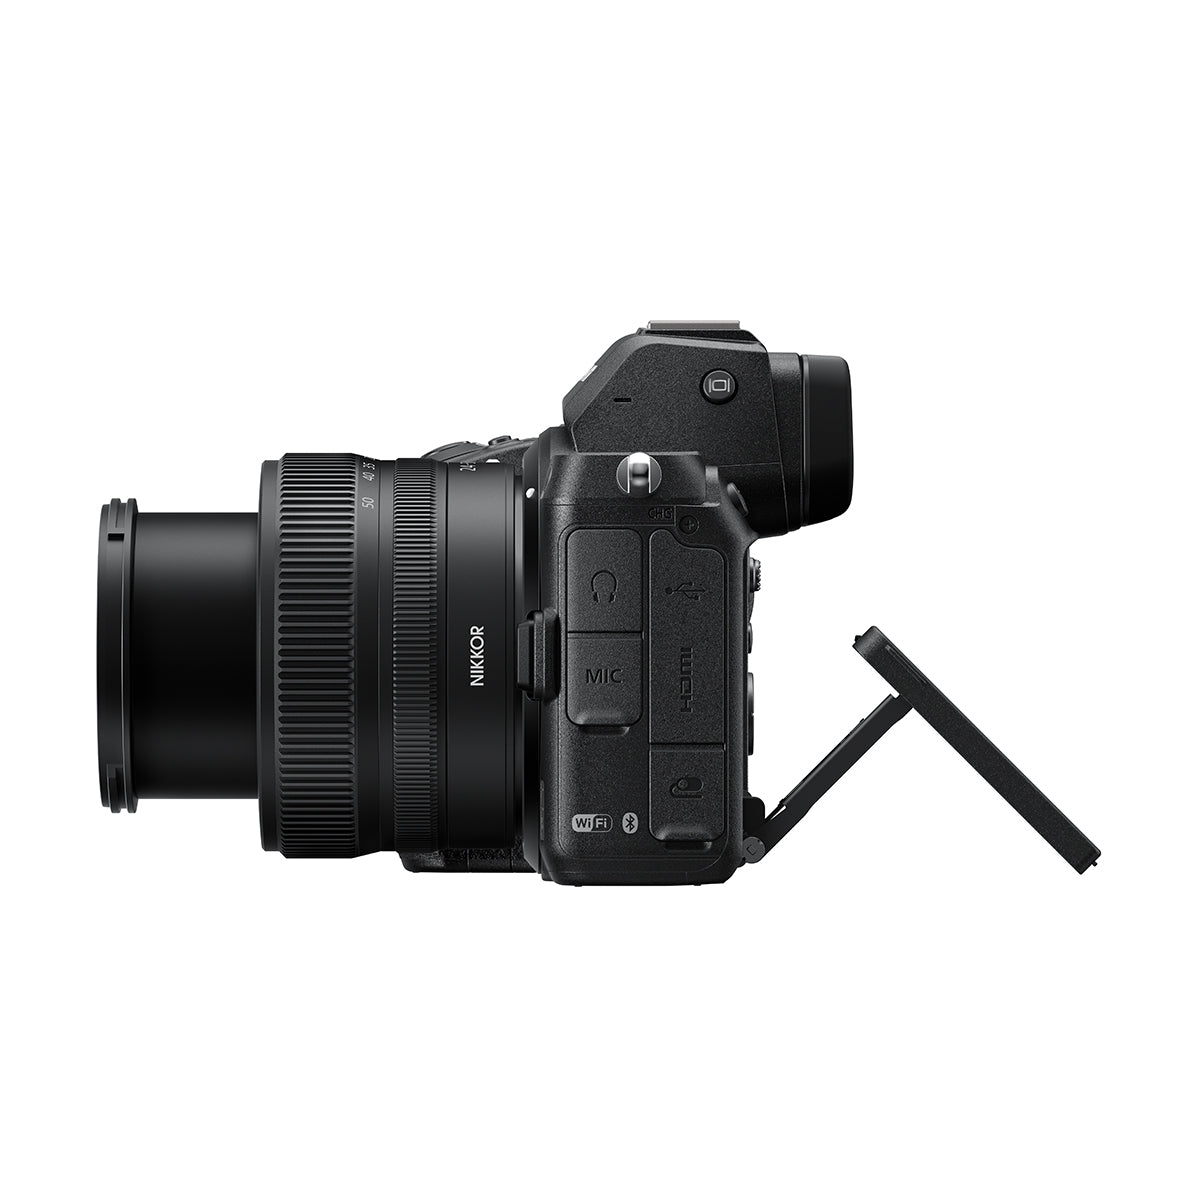 Nikon Z5 Mirrorless Camera Body w/ NIKKOR Z 24-50mm f/4-6.3 VR Lens